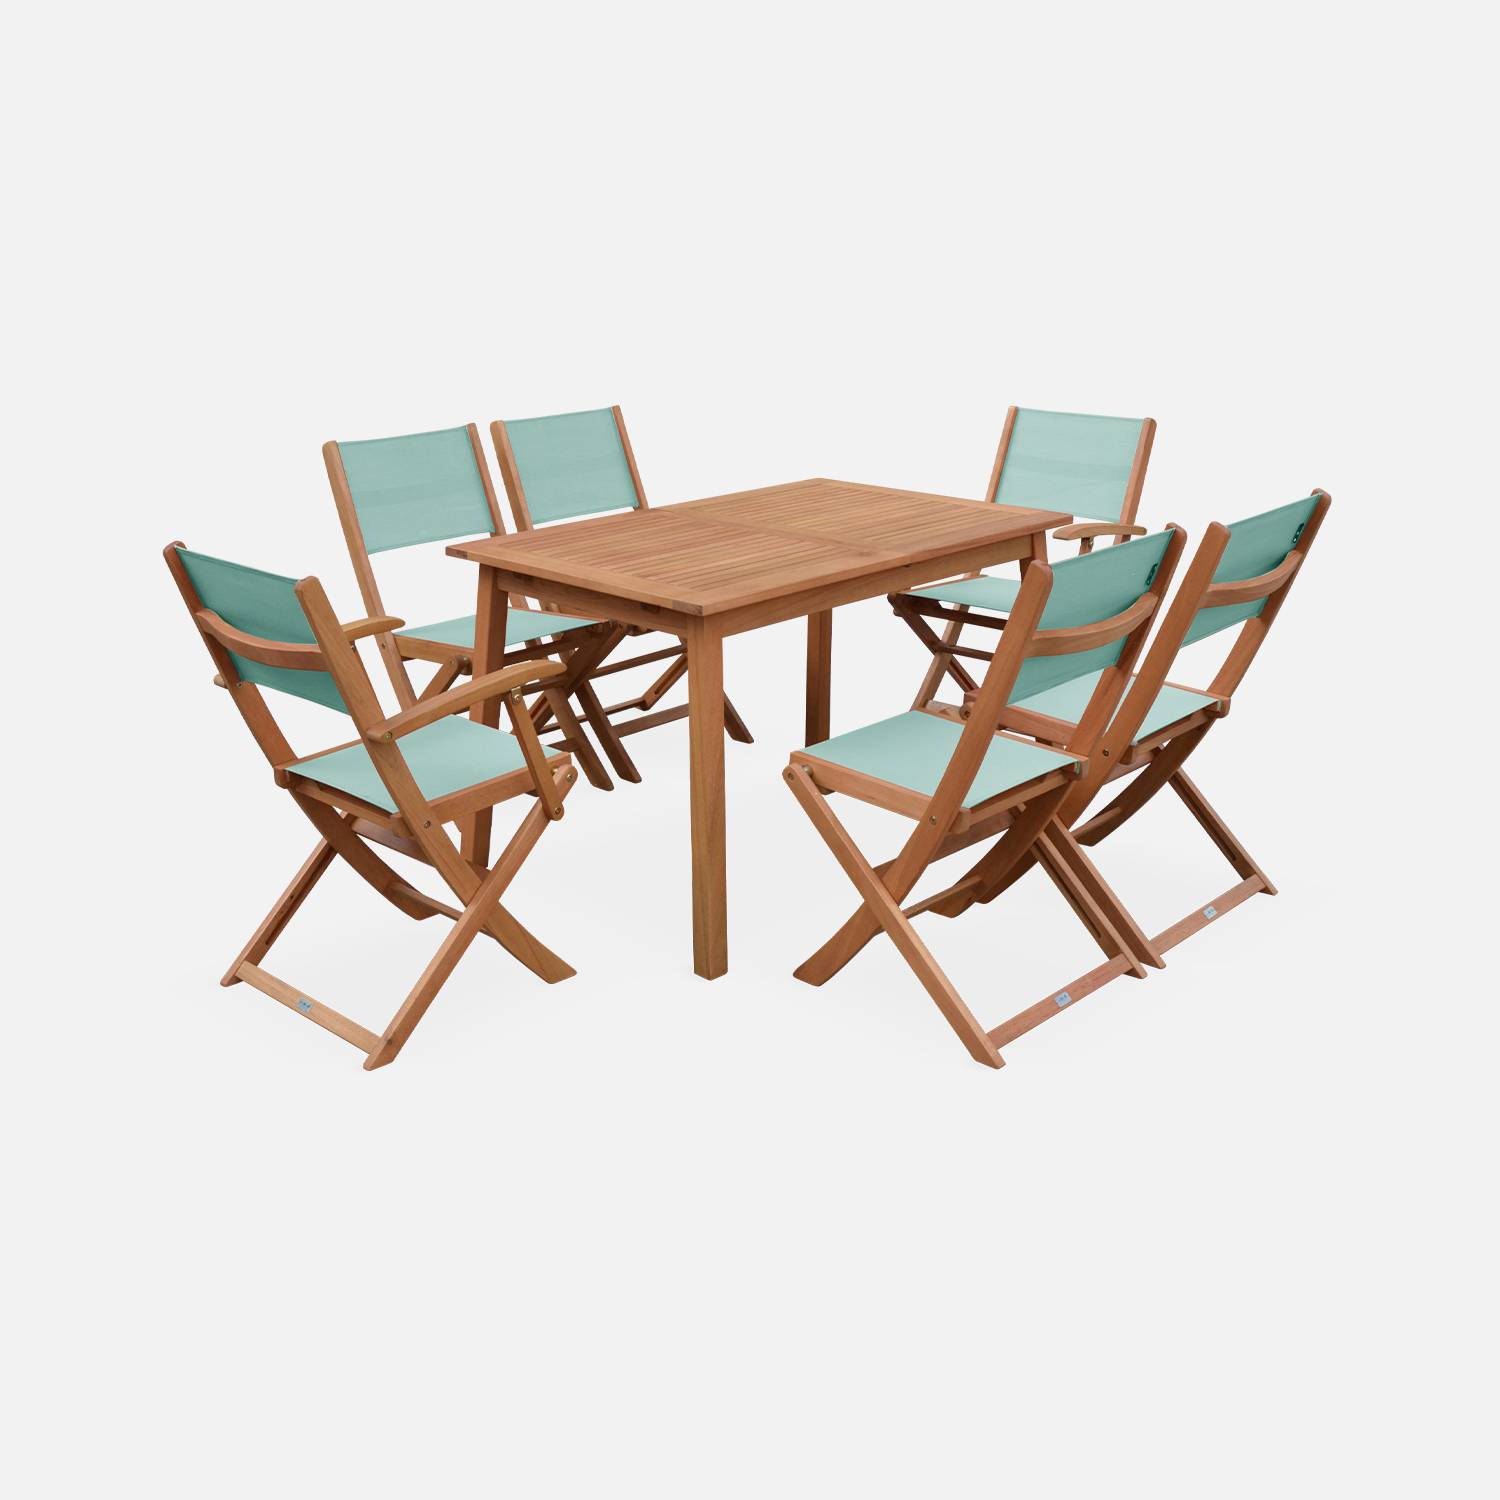 Ausziehbare Gartenmöbel aus Holz - Almeria - Tisch 120/180 cm mit Verlängerung, 2 Sesseln und 4 Stühlen aus geöltem FSC-Eukalyptusholz und grüngrauem Textilene Photo2